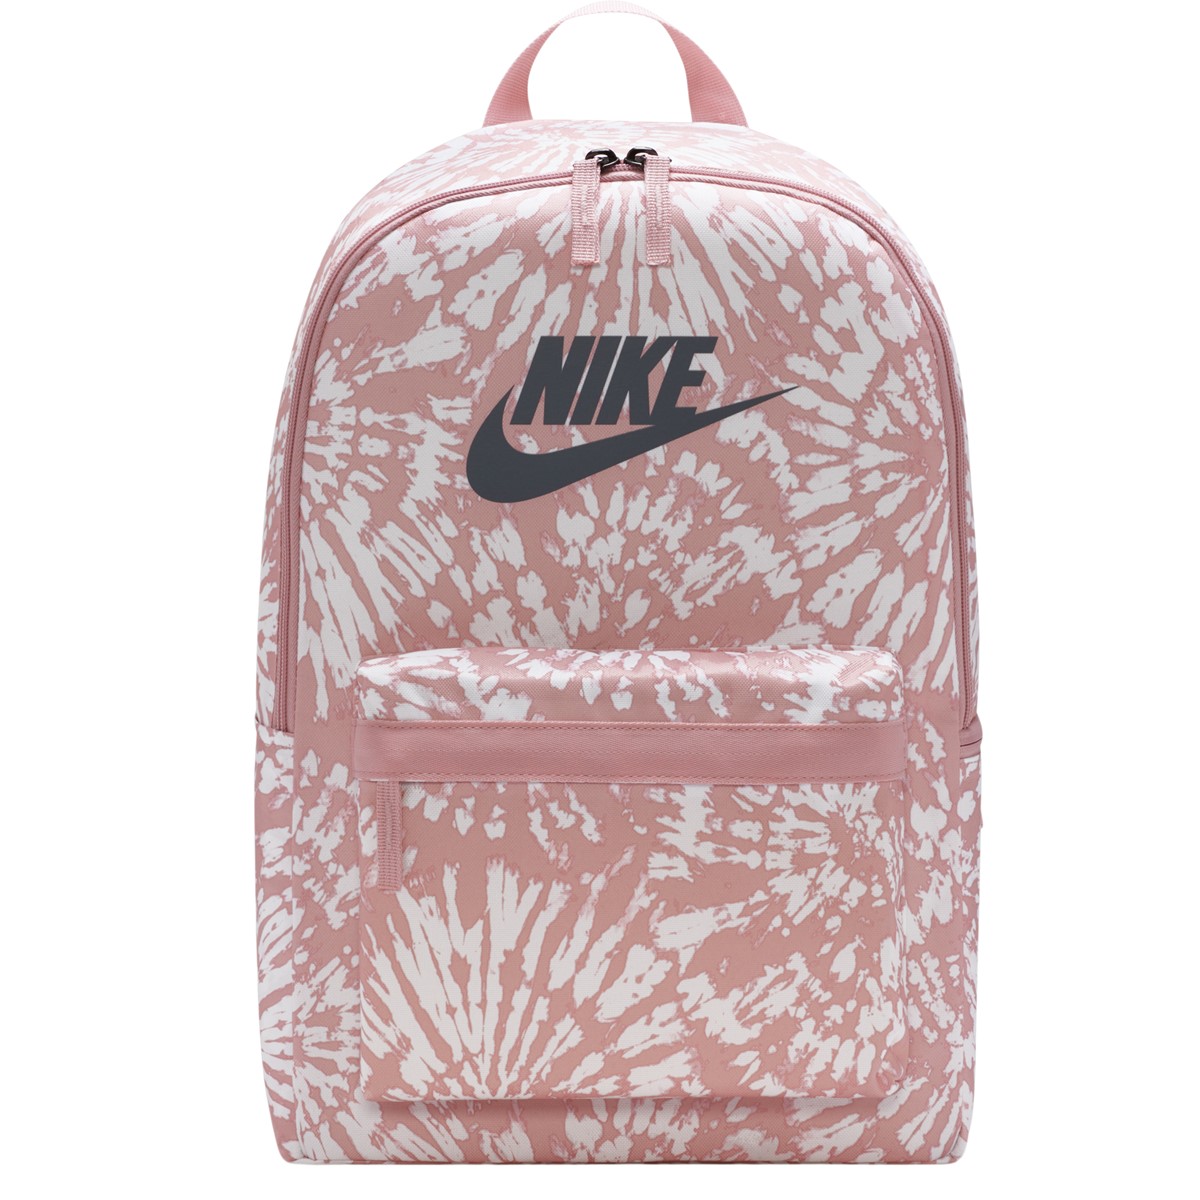 Heritage Tie-Dye Backpack in Pink/Grey